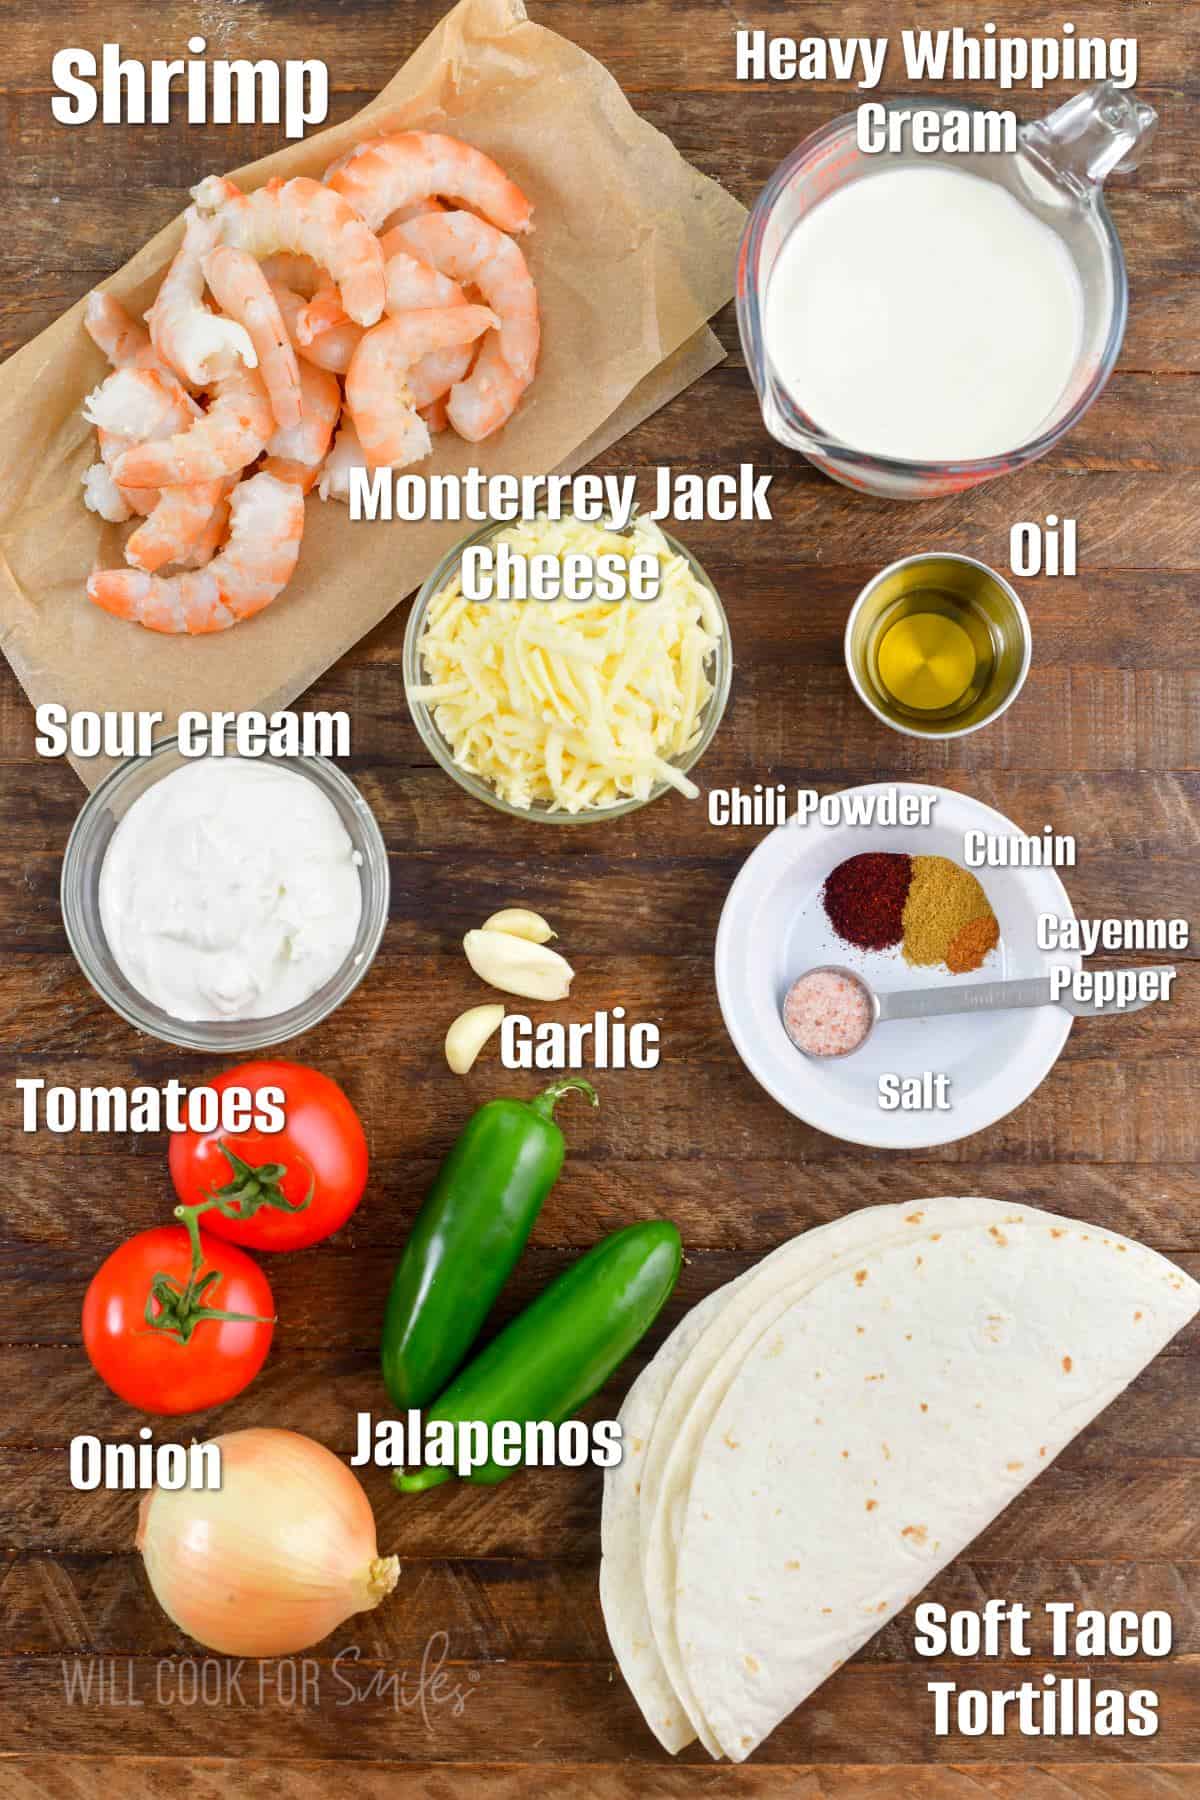 labeled ingredients for shrimp enchiladas on wooden board.